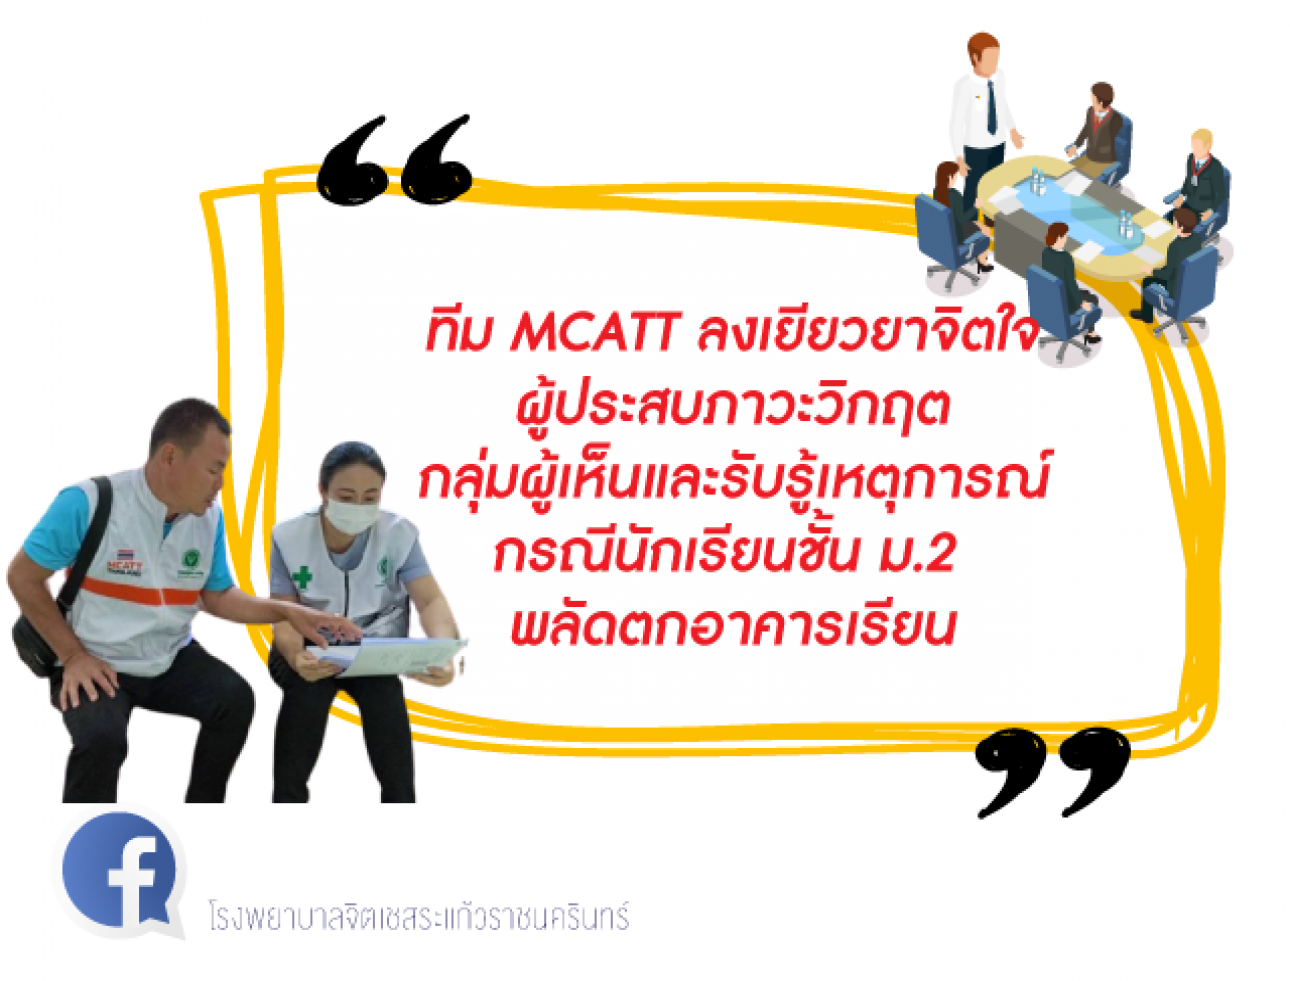 MCATT ลงเยียวยาจิตใจผู้ประสบภาวะวิกฤต